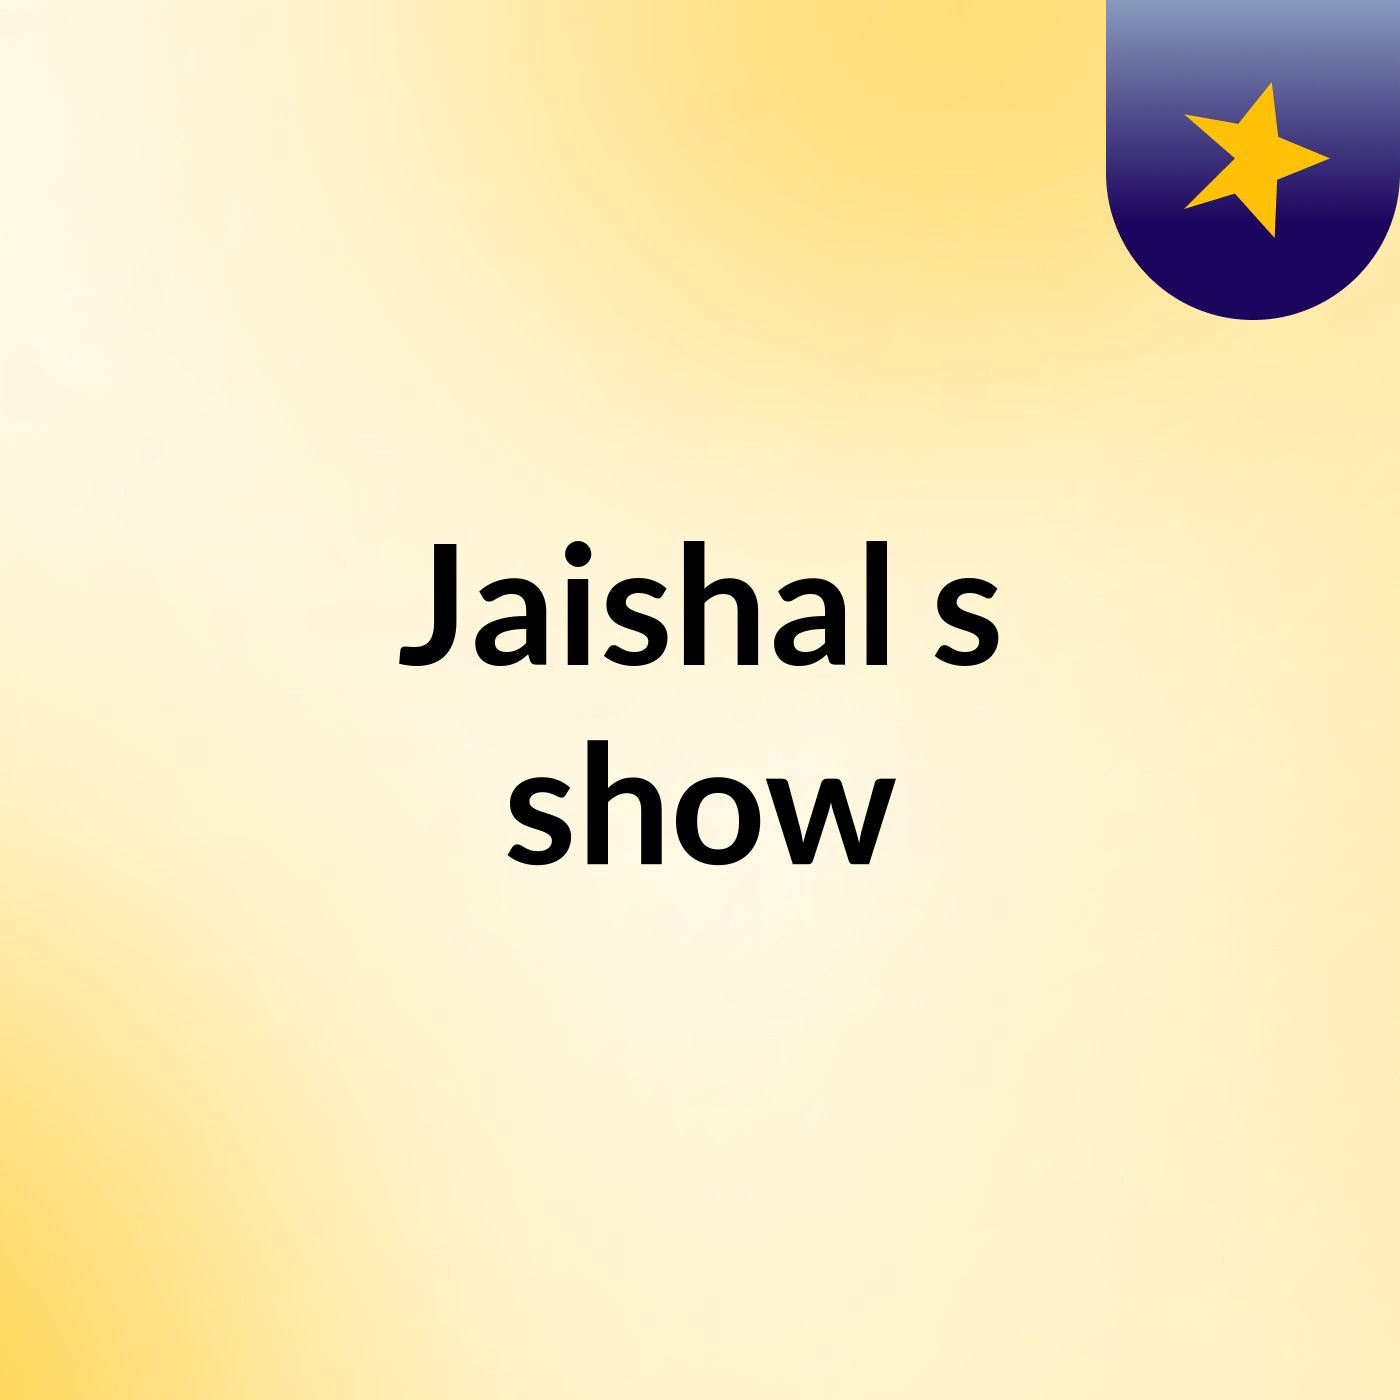 Jaishal's show